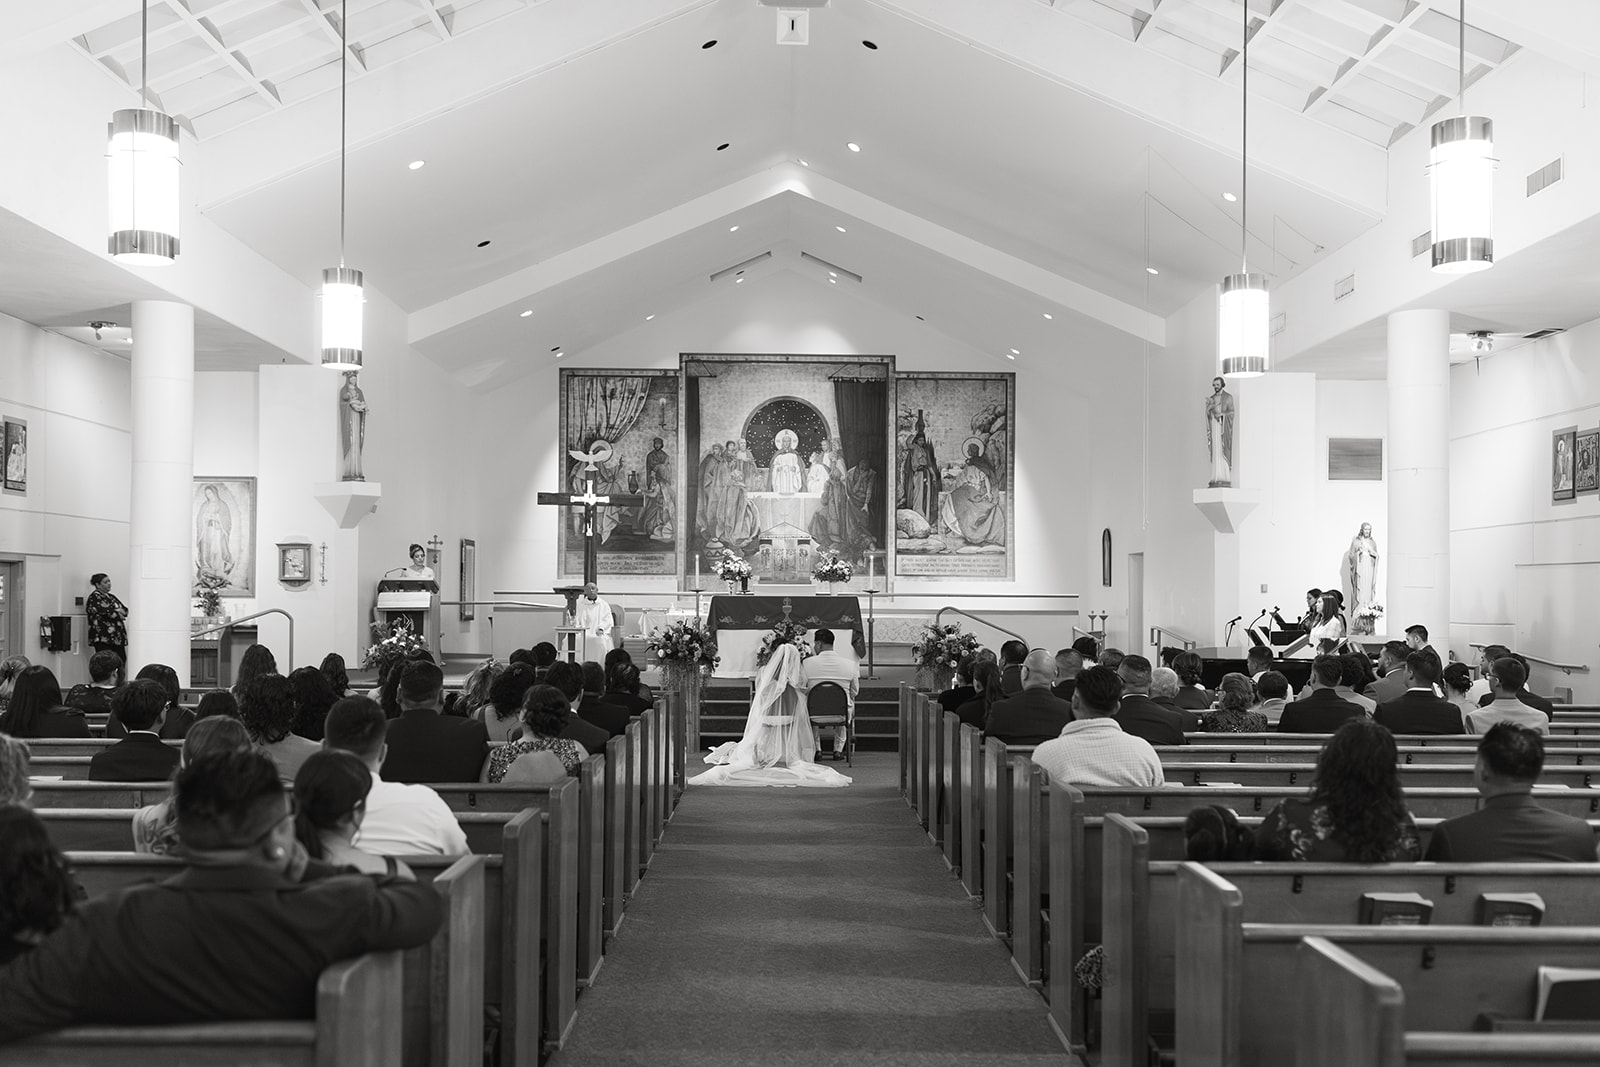 sacramento california backlyard wedding norcal indoor ceremony wedding religious wedding ideas church wedding places